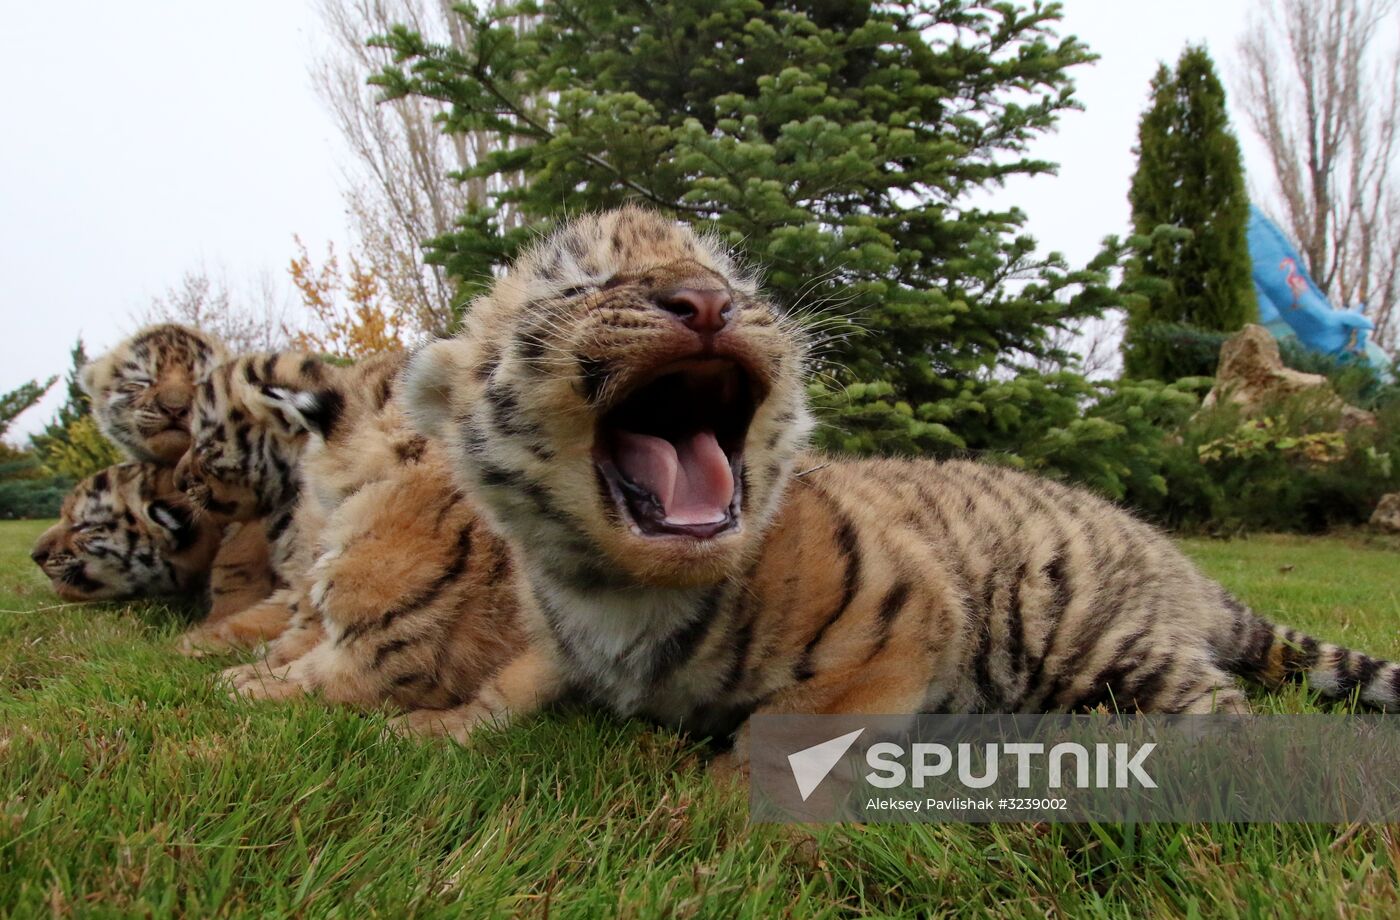 Six Siberian tigers cubs born at Taigan safri park